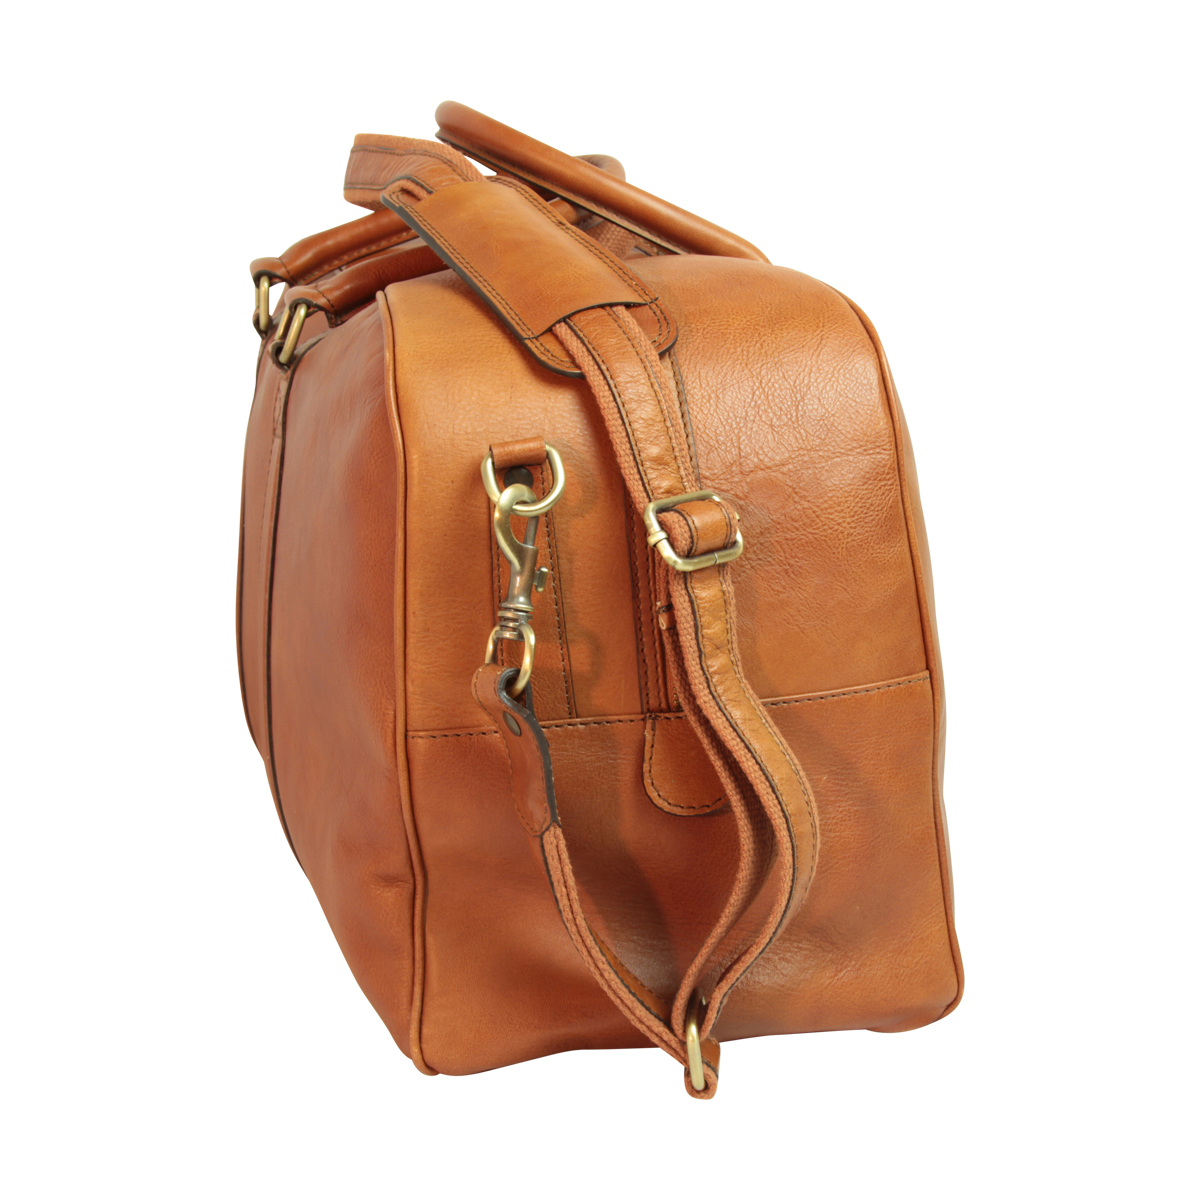 Soft Calfskin Leather Travel Bag - Gold | 030591CO US | Old Angler Firenze